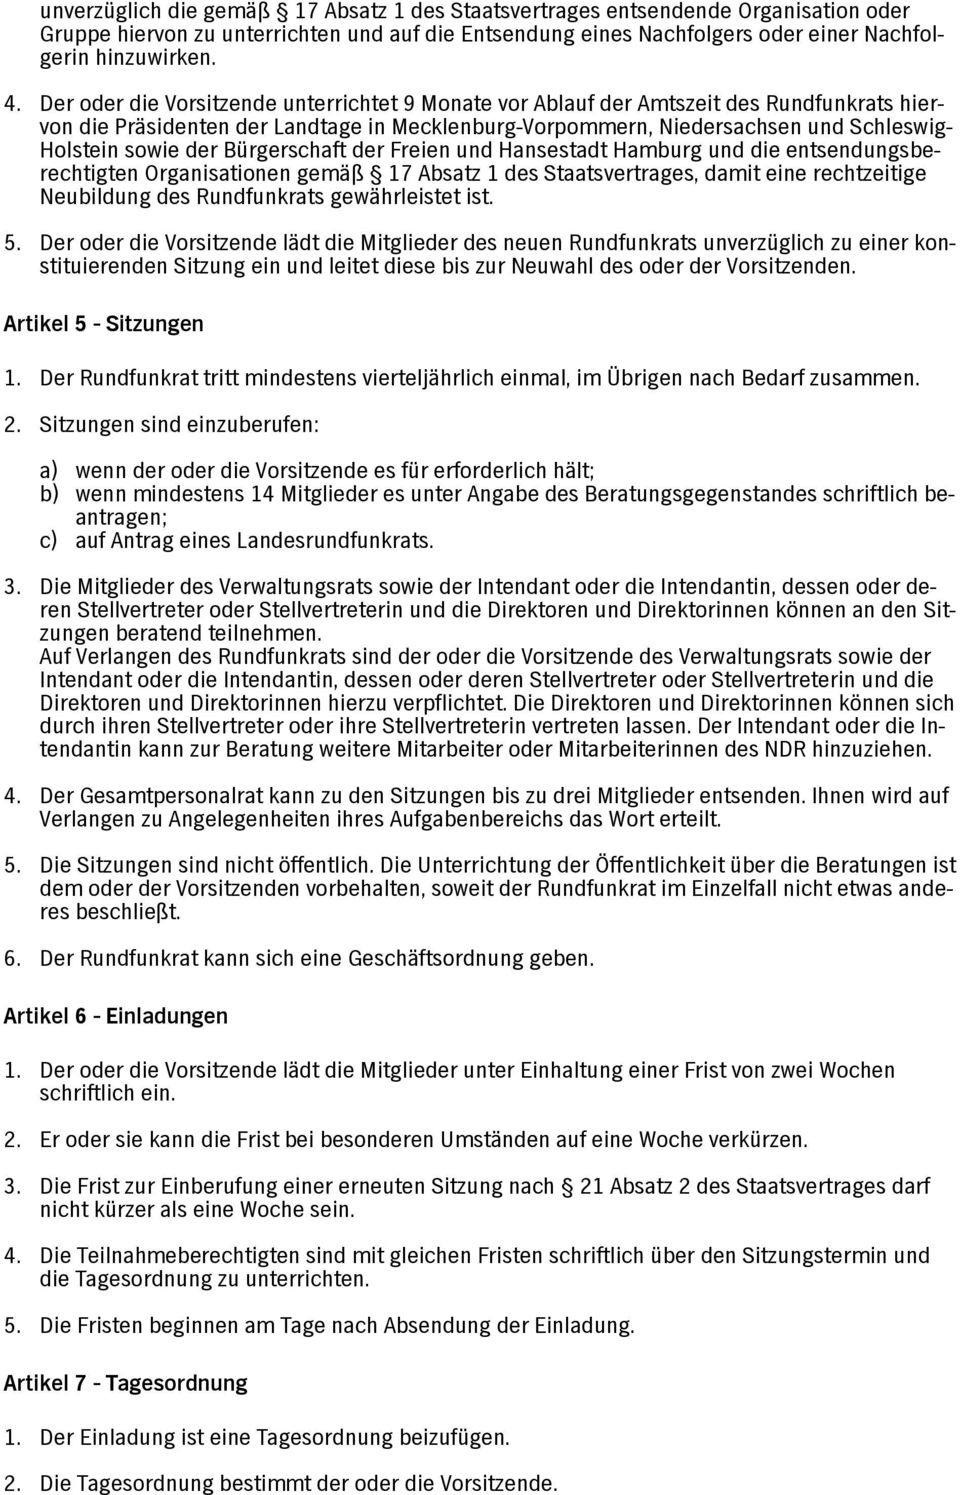 Bürgerschaft der Freien und Hansestadt Hamburg und die entsendungsberechtigten Organisationen gemäß 17 Absatz 1 des Staatsvertrages, damit eine rechtzeitige Neubildung des Rundfunkrats gewährleistet